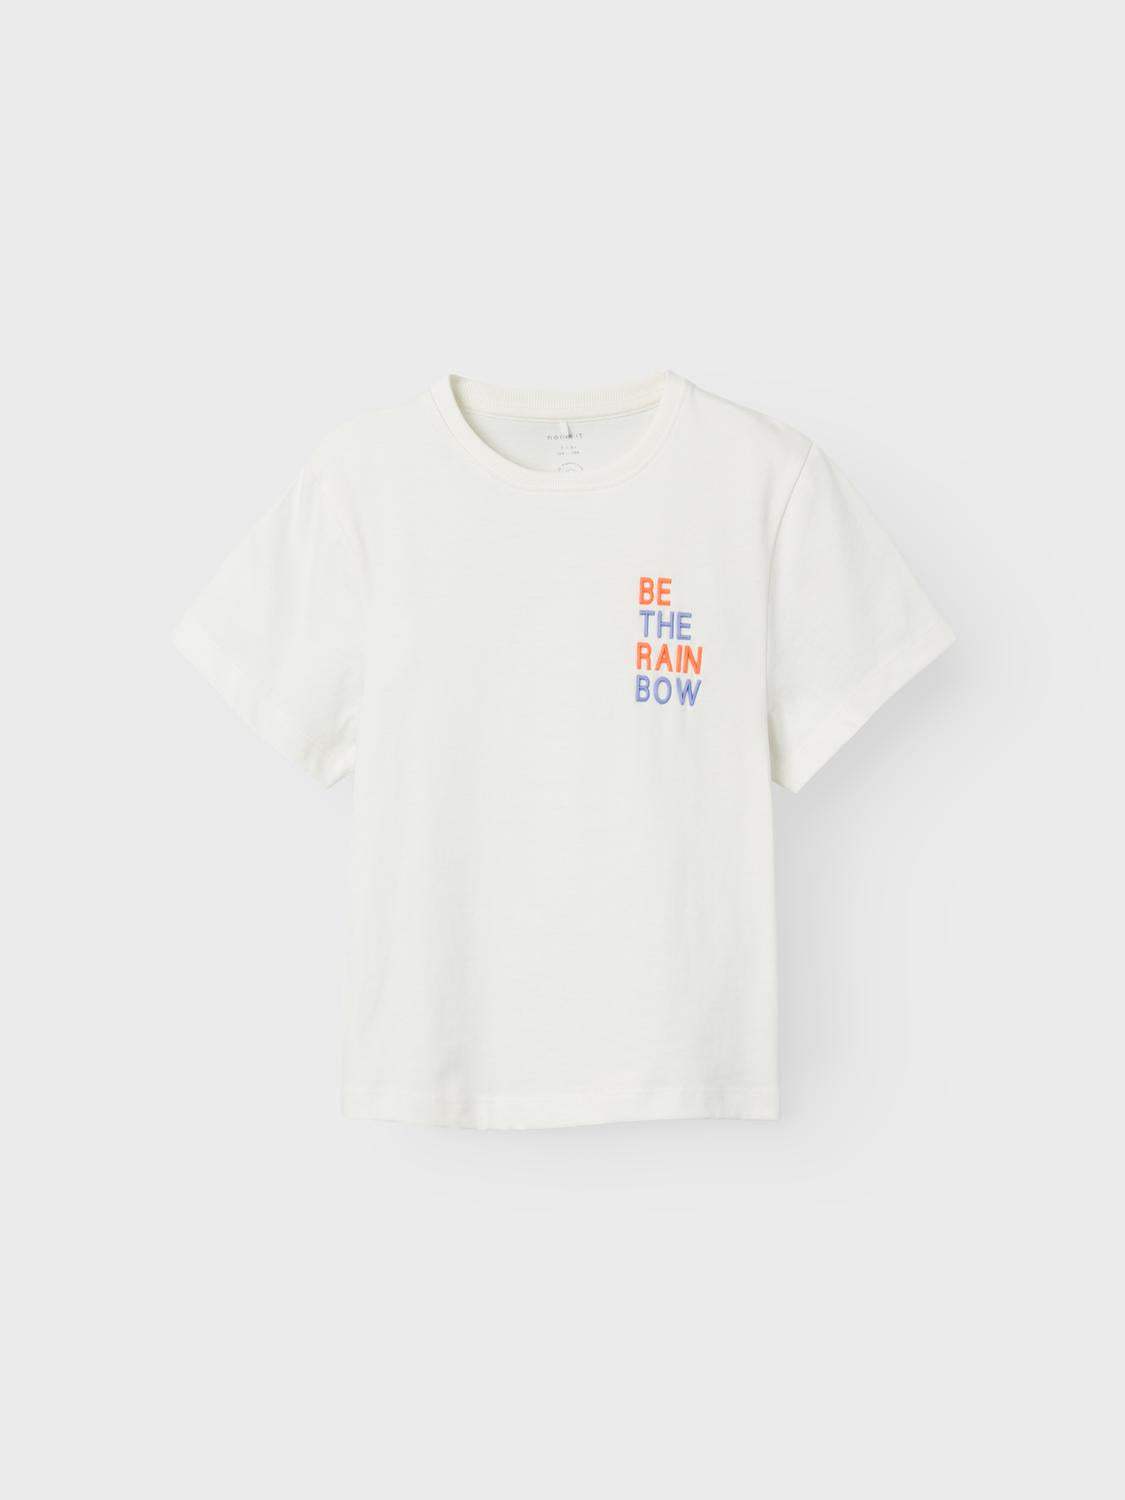 NKFTUPSI T-Shirts & Tops - Jet Stream